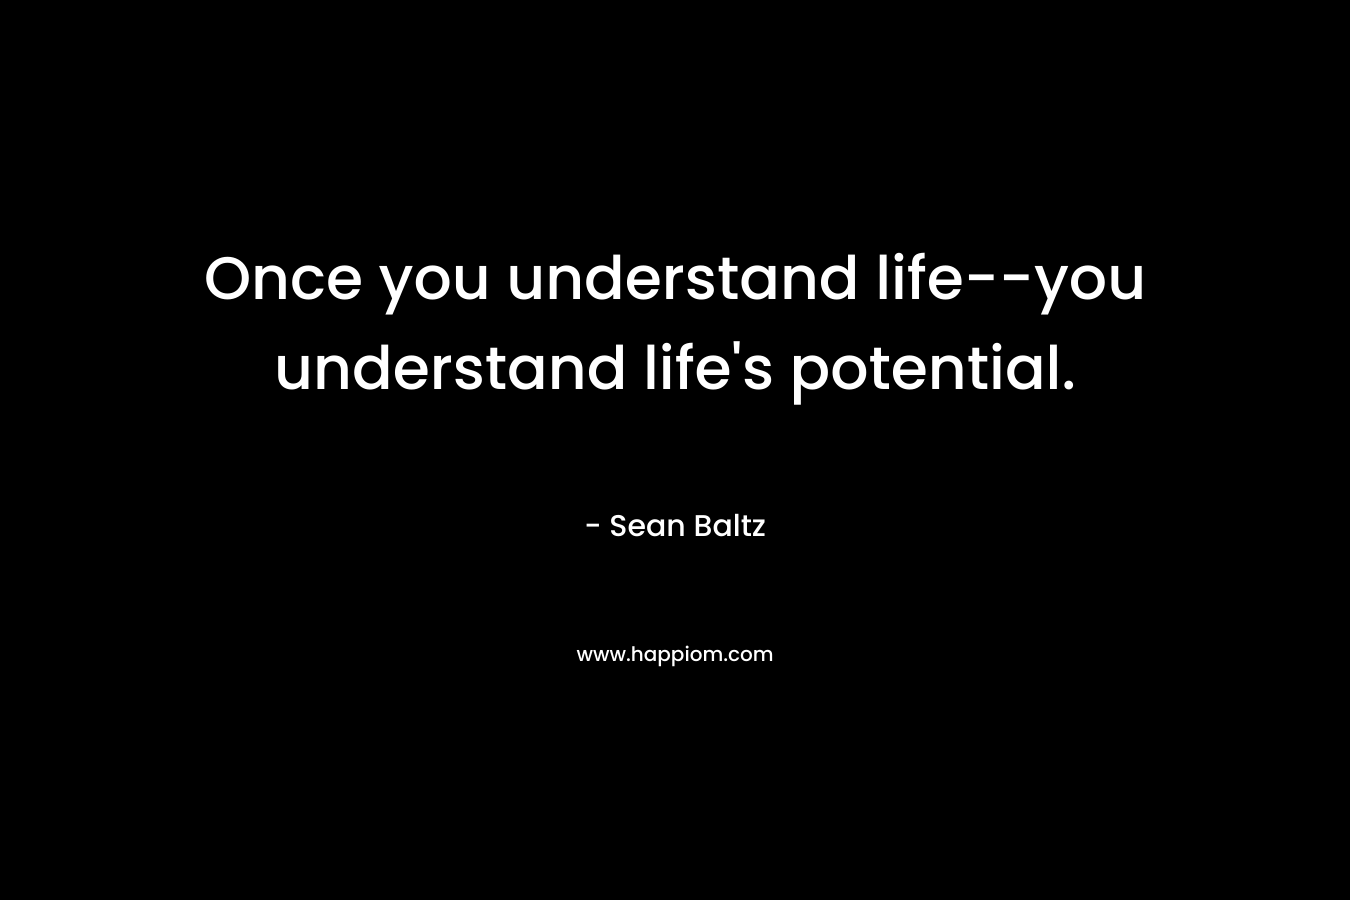 Once you understand life--you understand life's potential.